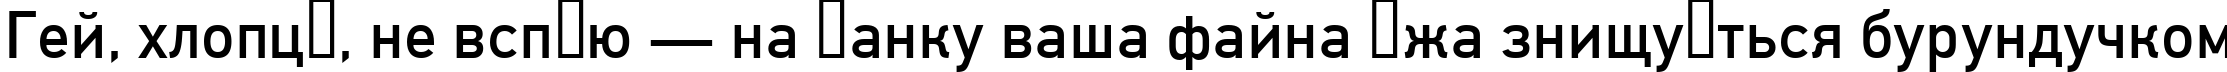 Пример написания шрифтом font134 текста на украинском